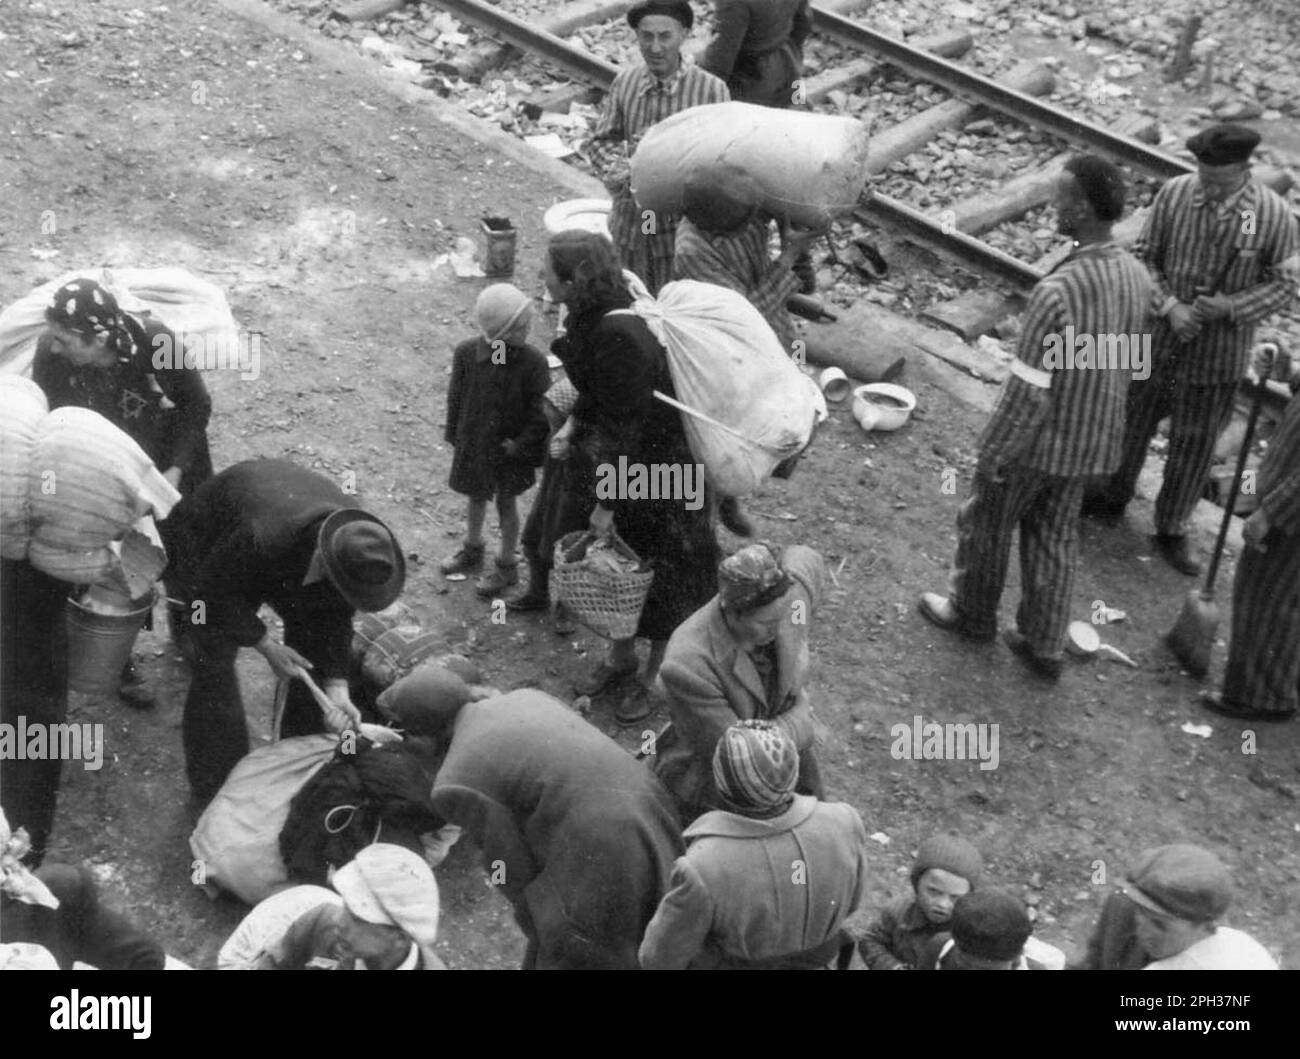 Nuovi arrivi, campo di concentramento di Auschwitz II-Birkenau nel giugno 1944. Stanno raccogliendo i loro effetti personali prima di dirigersi verso la rampa di selezione, dove entreranno in lavori forzati o subito nelle camere a gas. Foto Stock